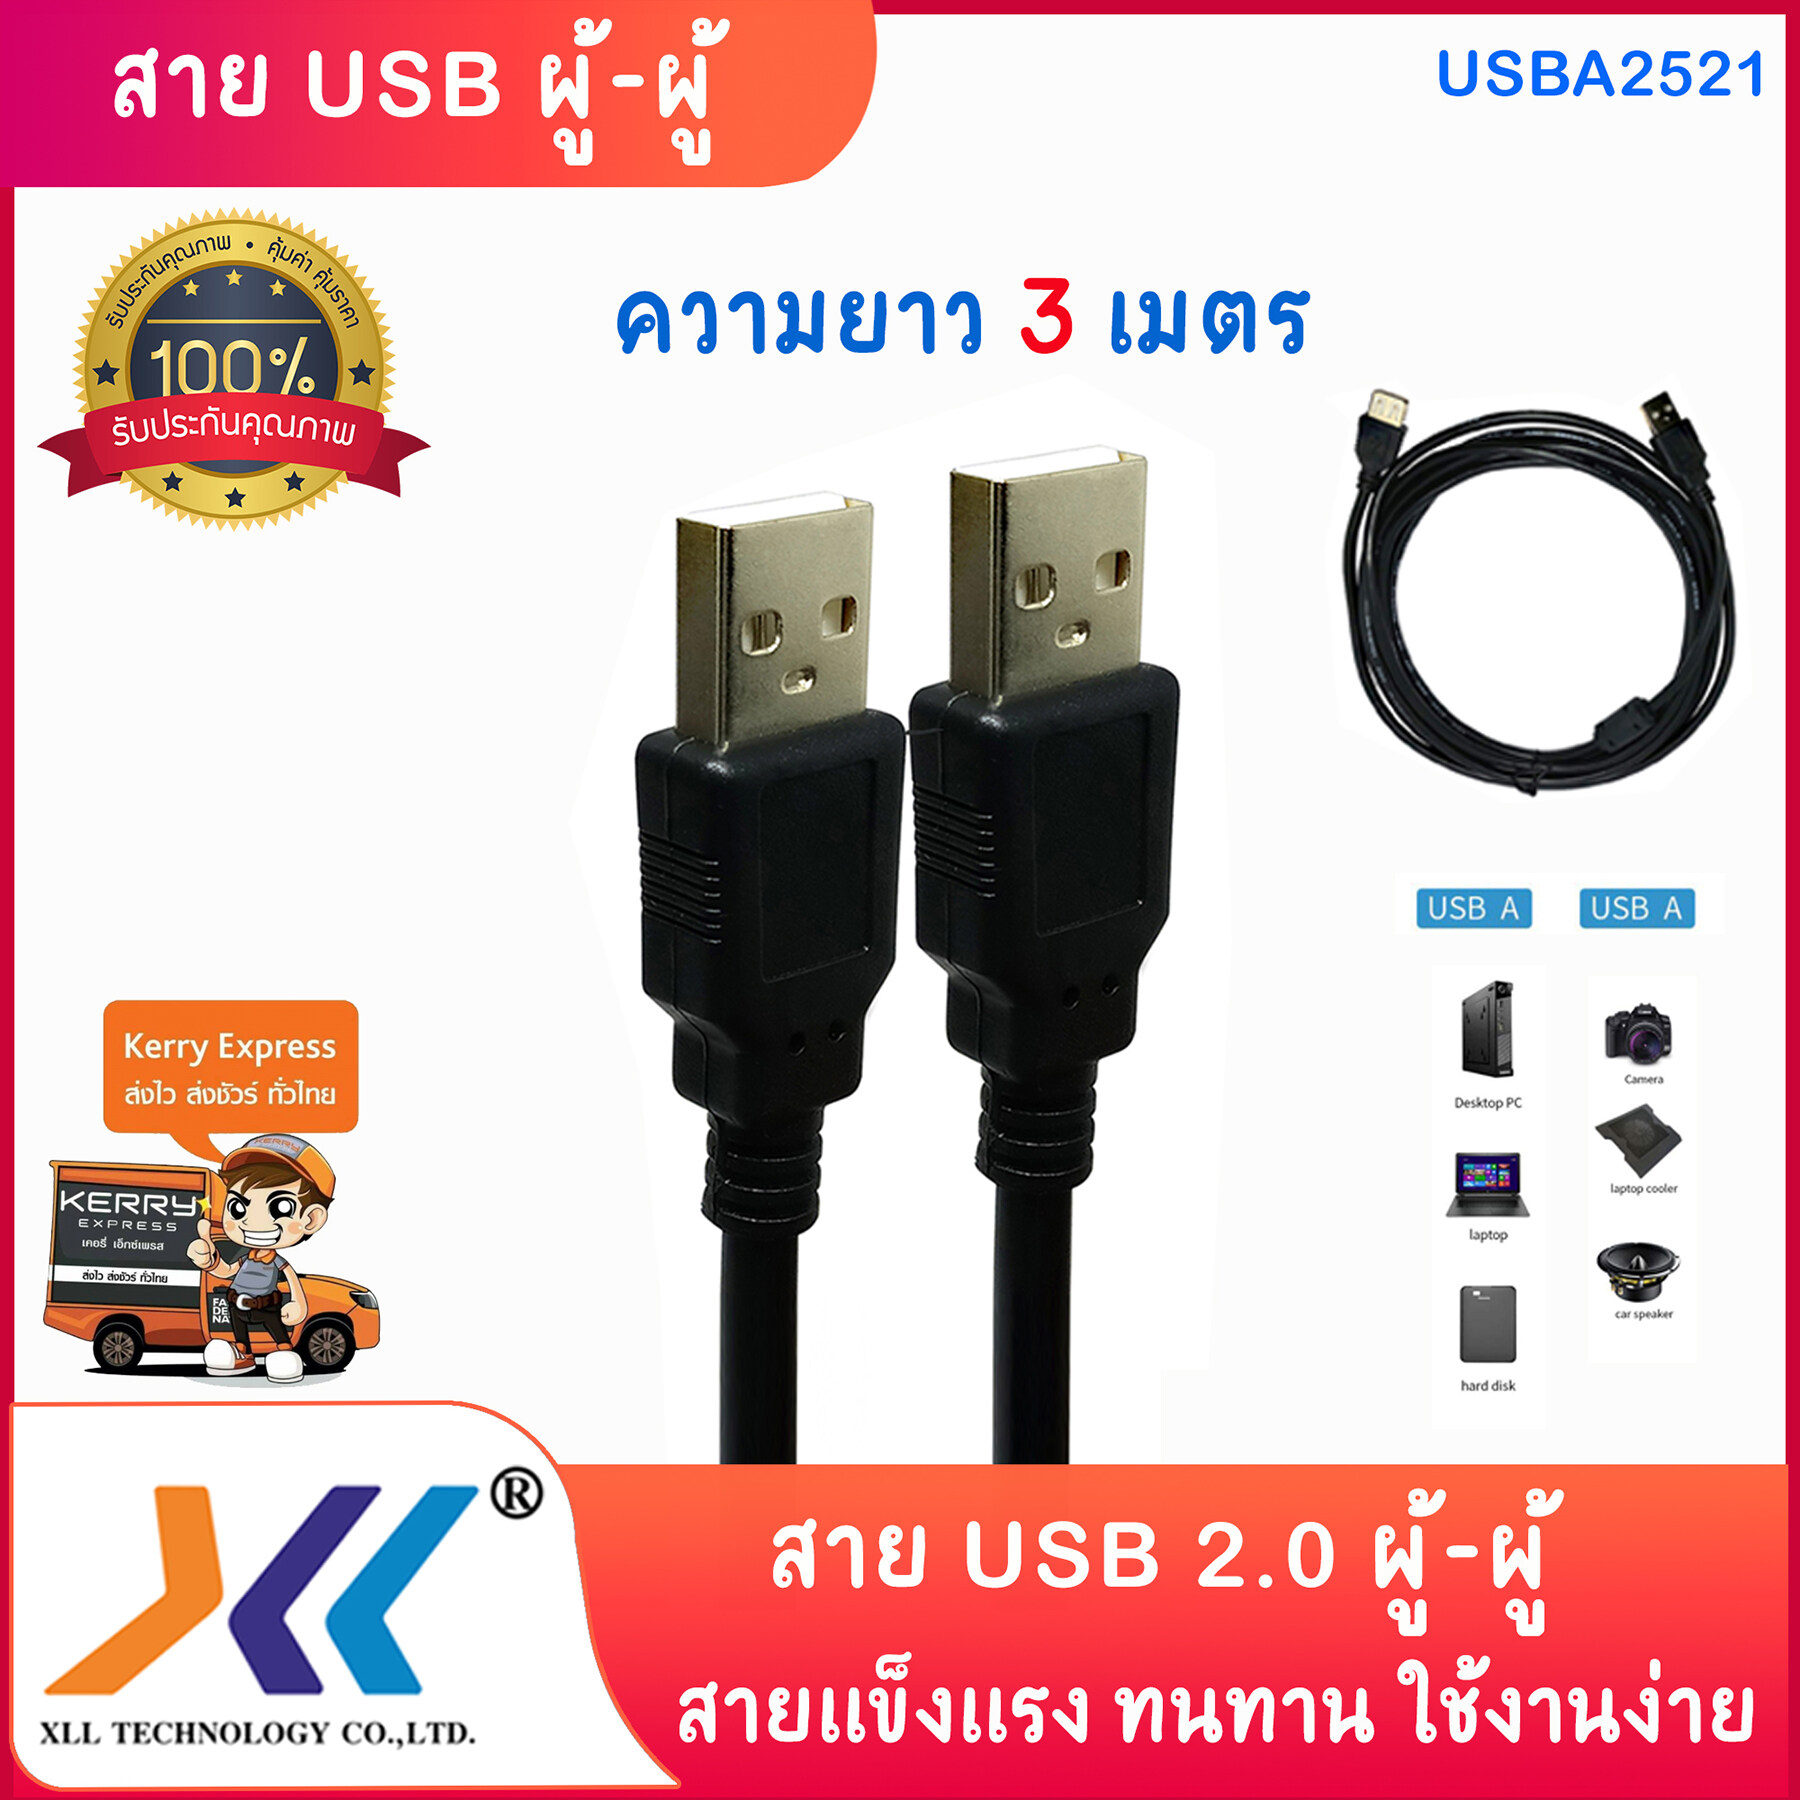 สายUSB 2 หัว ตัวผู้ USB 2.0 สำหรับ HDD , card reader , printers , cameras ความยาว 1.5เมตร 3เมตร 5เมตร